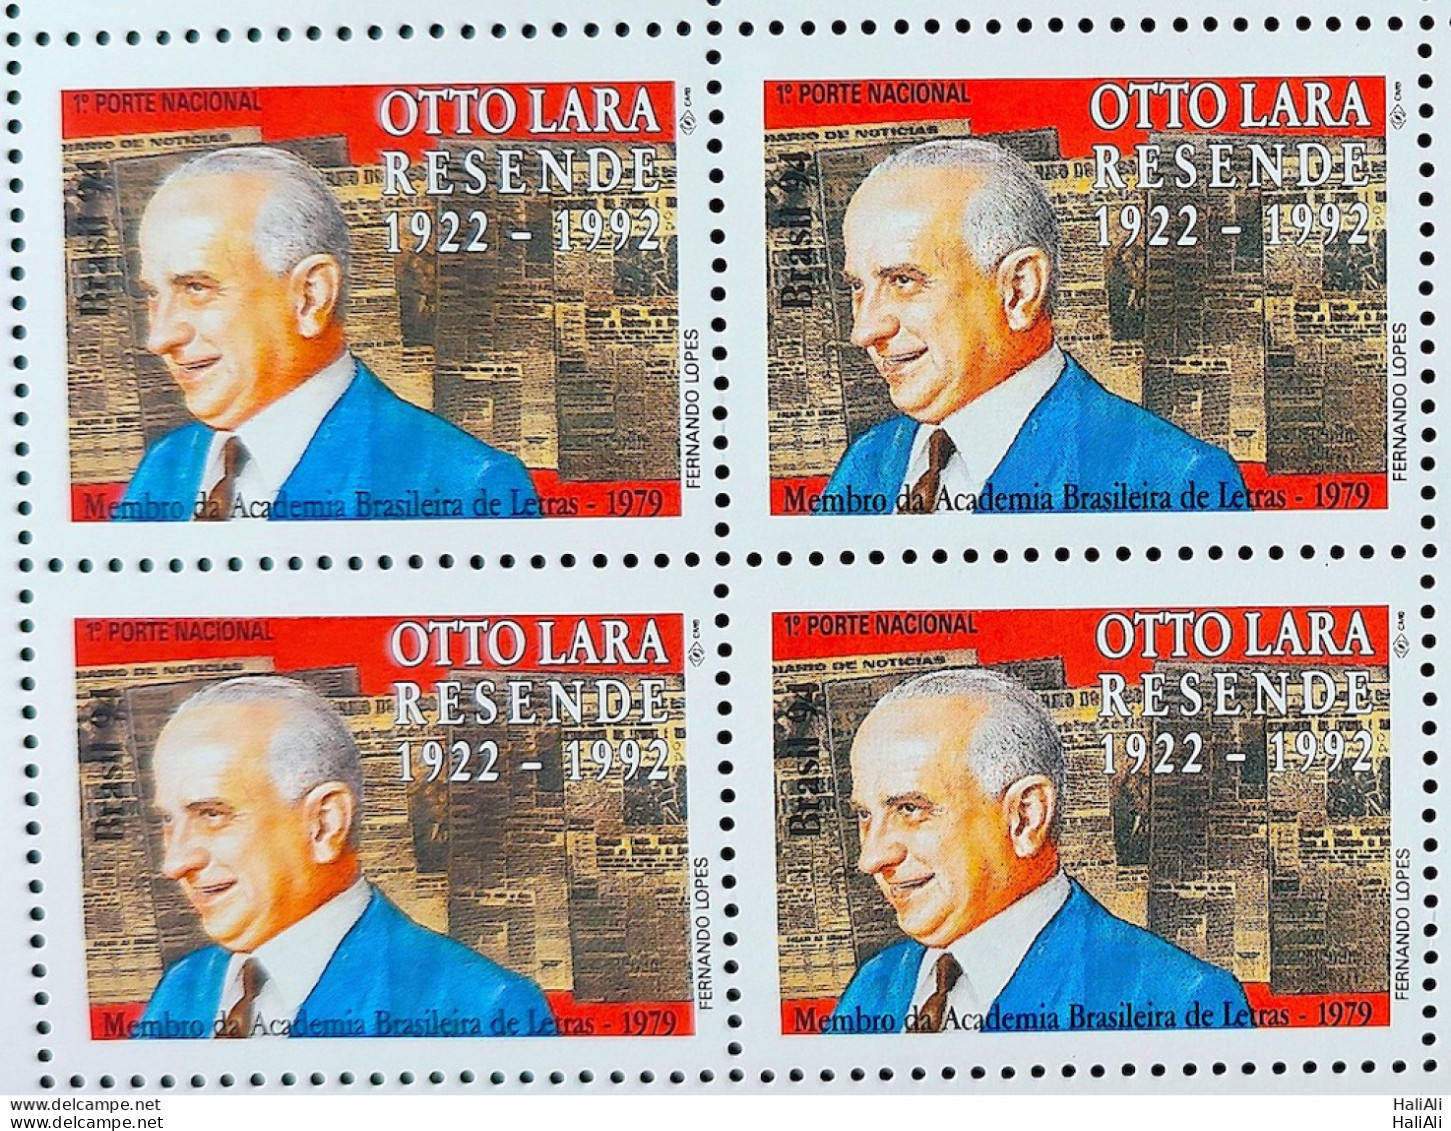 C 1905 Brazil Stamp Otto Lara Resende Literature 1994 Block Of 4 - Unused Stamps